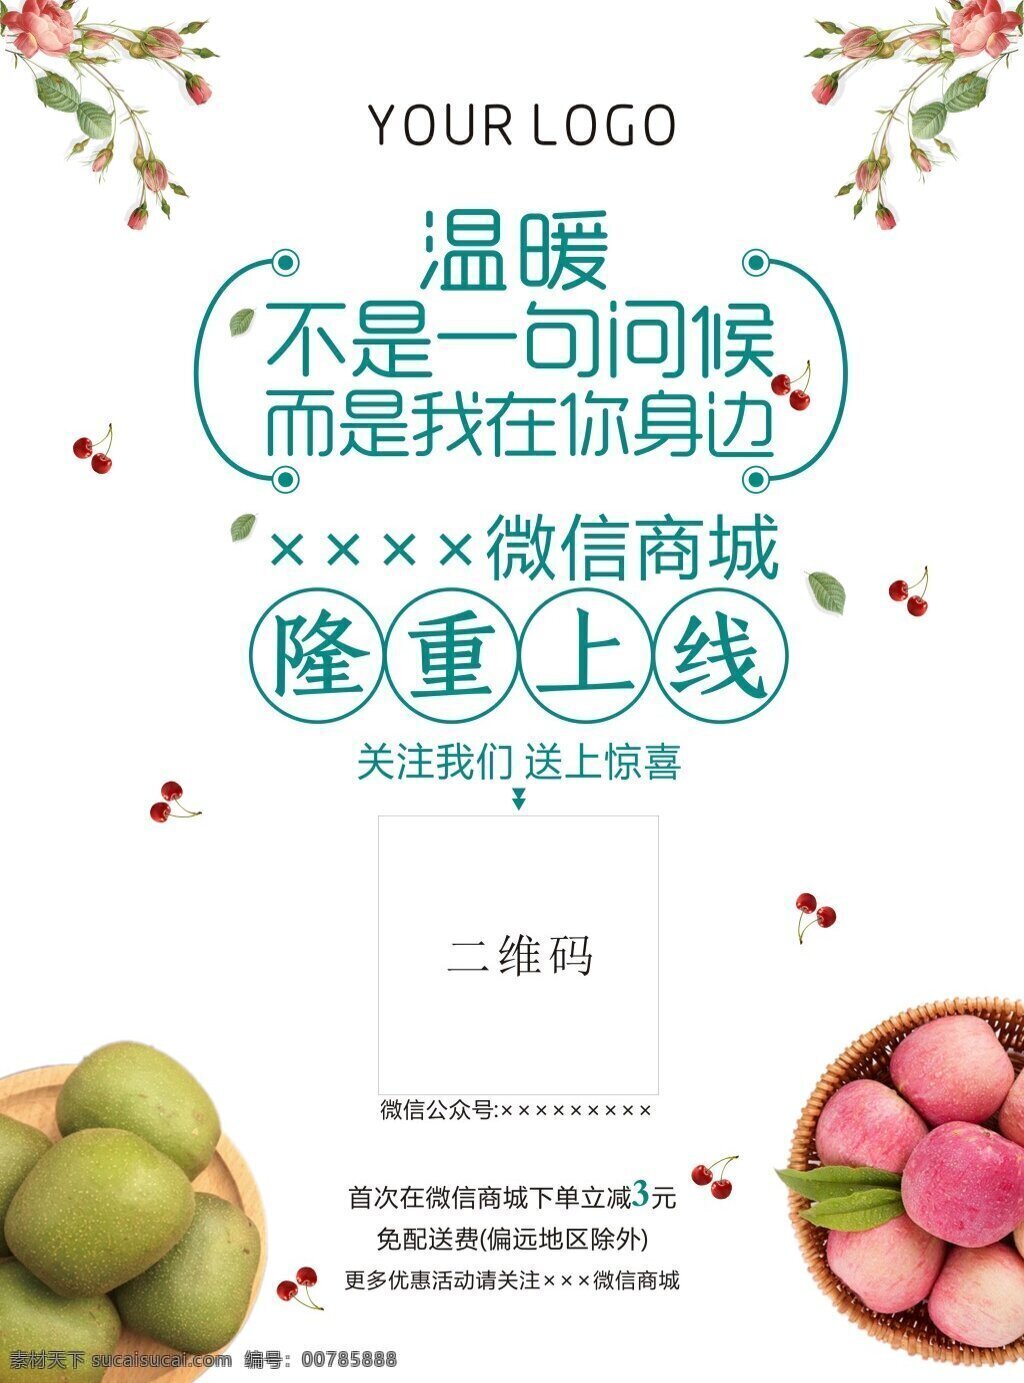 品牌 宣传 电梯 海报 商业 微信 上线 二维码 水果 绿色 鲜花 樱桃 活动